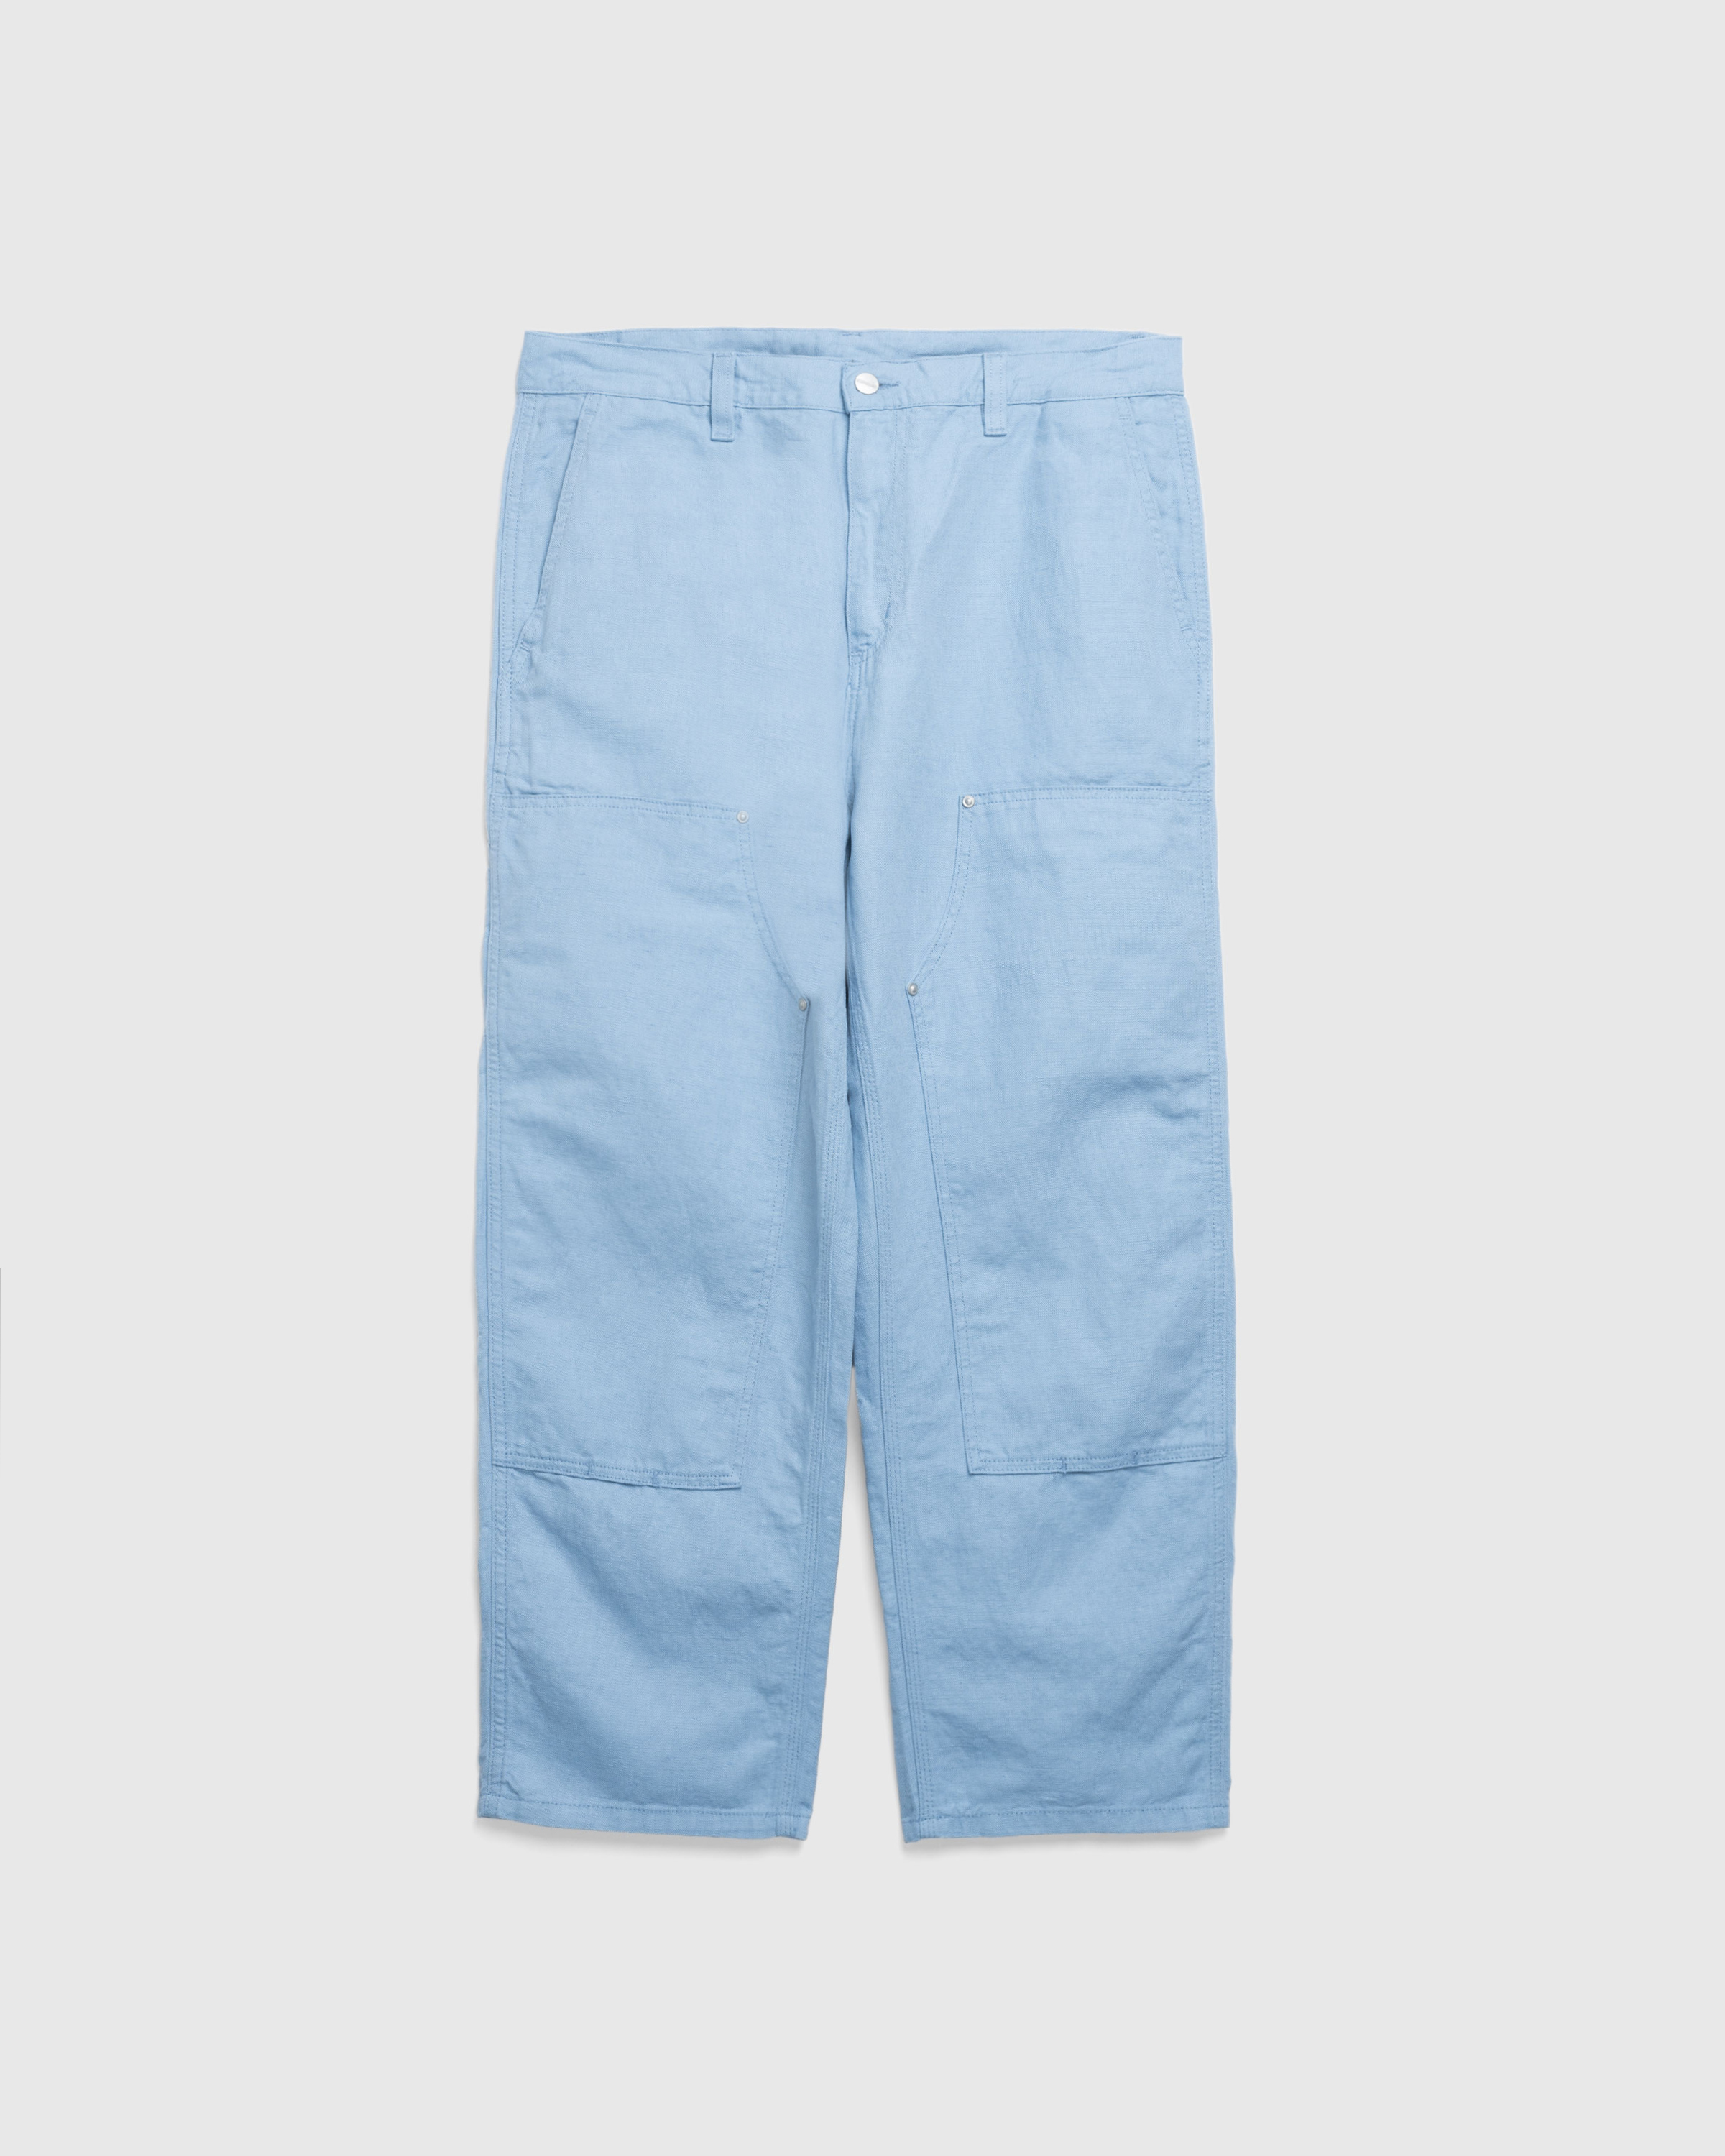 Carhartt WIP – Walter Double Knee Pant Misty Sky/Rinsed - Work Pants - Blue - Image 1